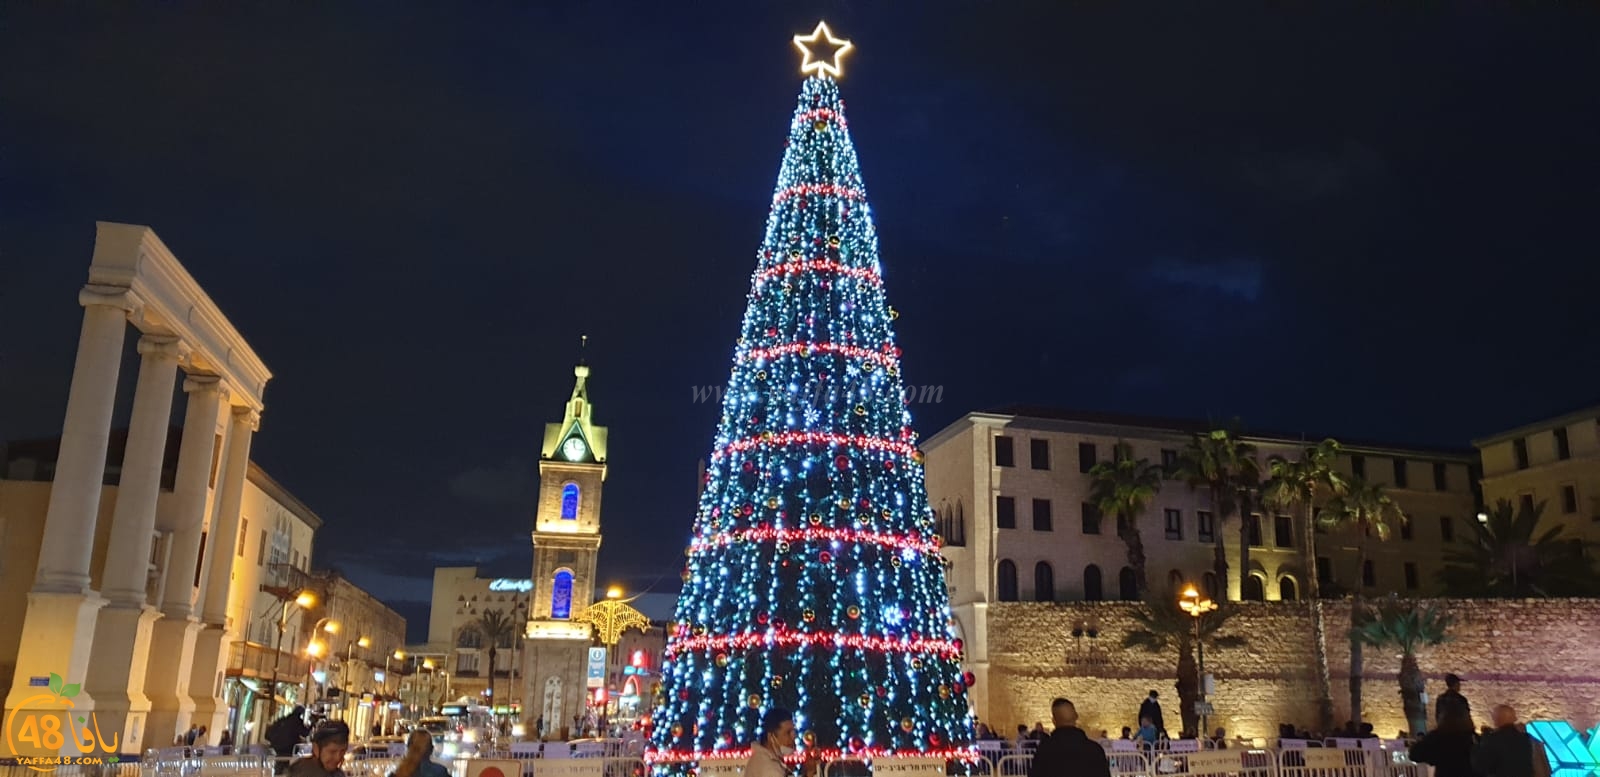  اضاءة شجرة الميلاد في مدينة يافا وسط غياب الأجواء الاحتفالية